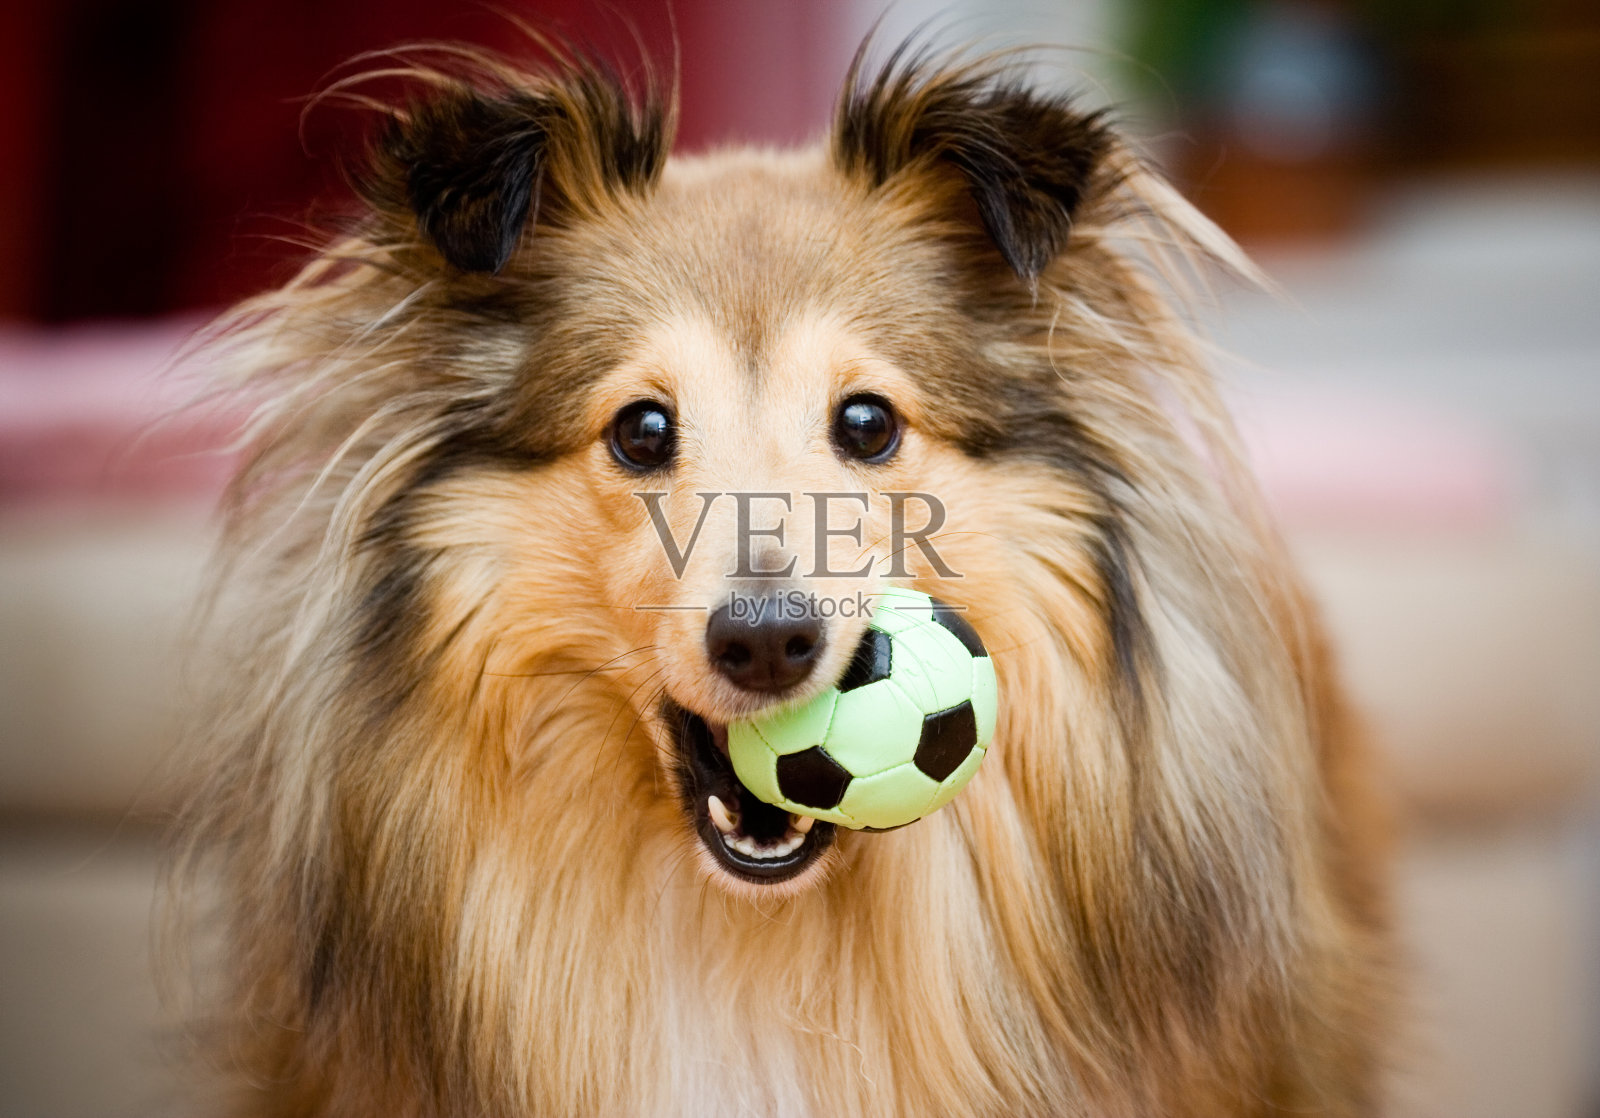 一只雪莉小狗在玩一个绿色和黑色相间的小球照片摄影图片